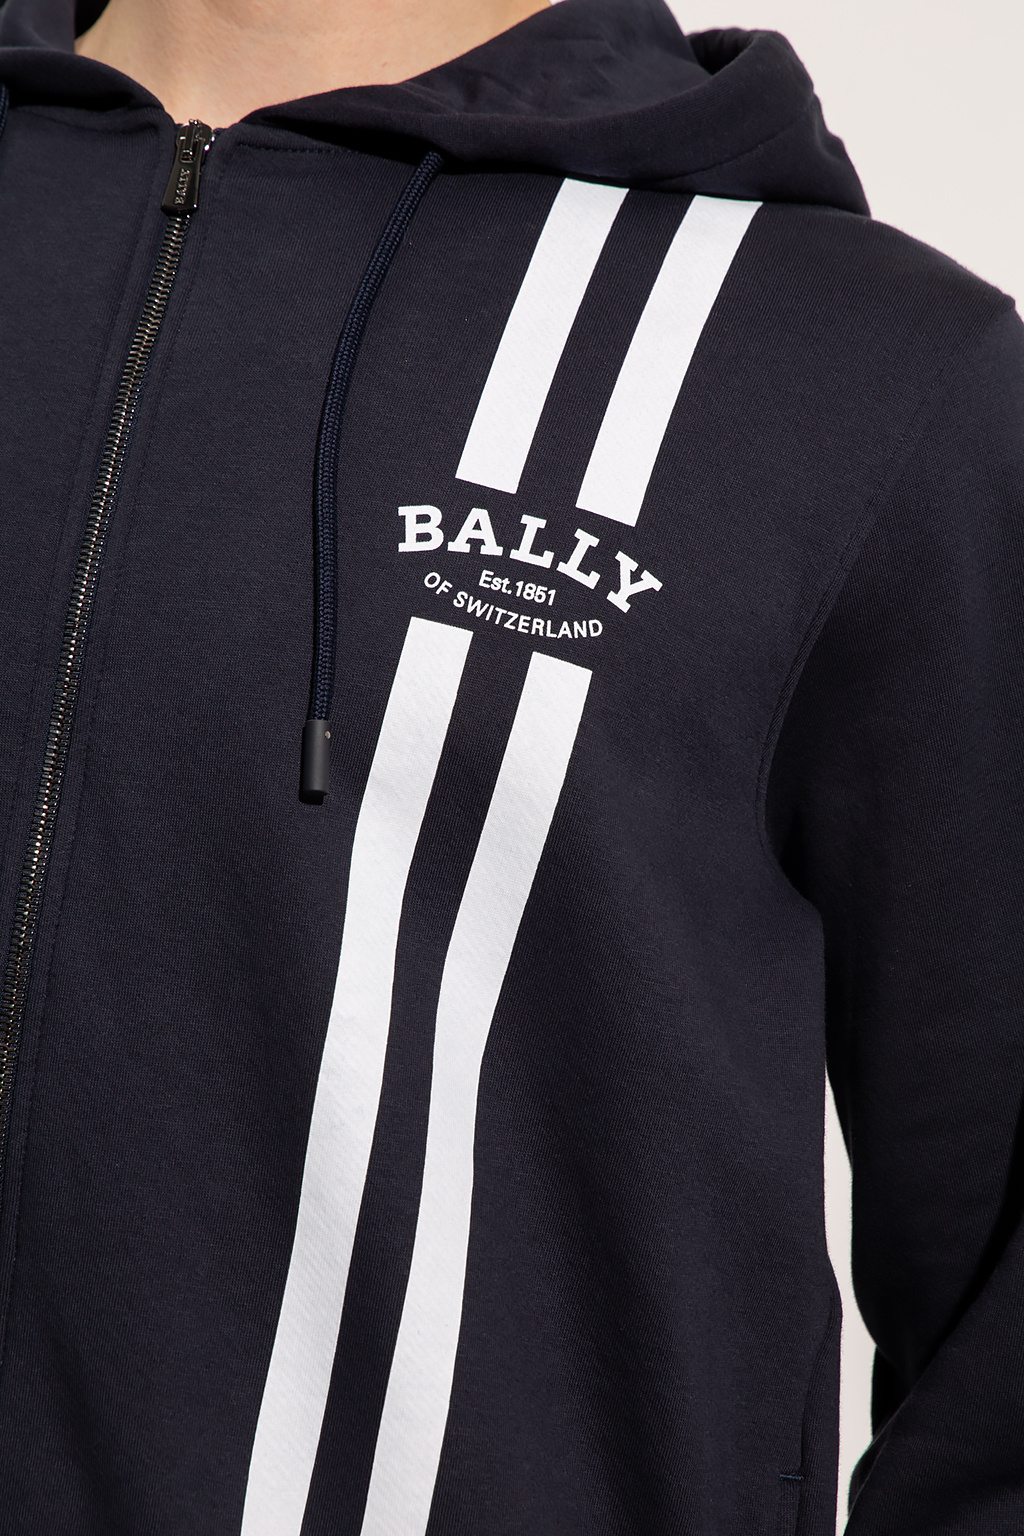 Bally adidas golf adicross 1 2 zip hoodie Full-Zip fq3529 white